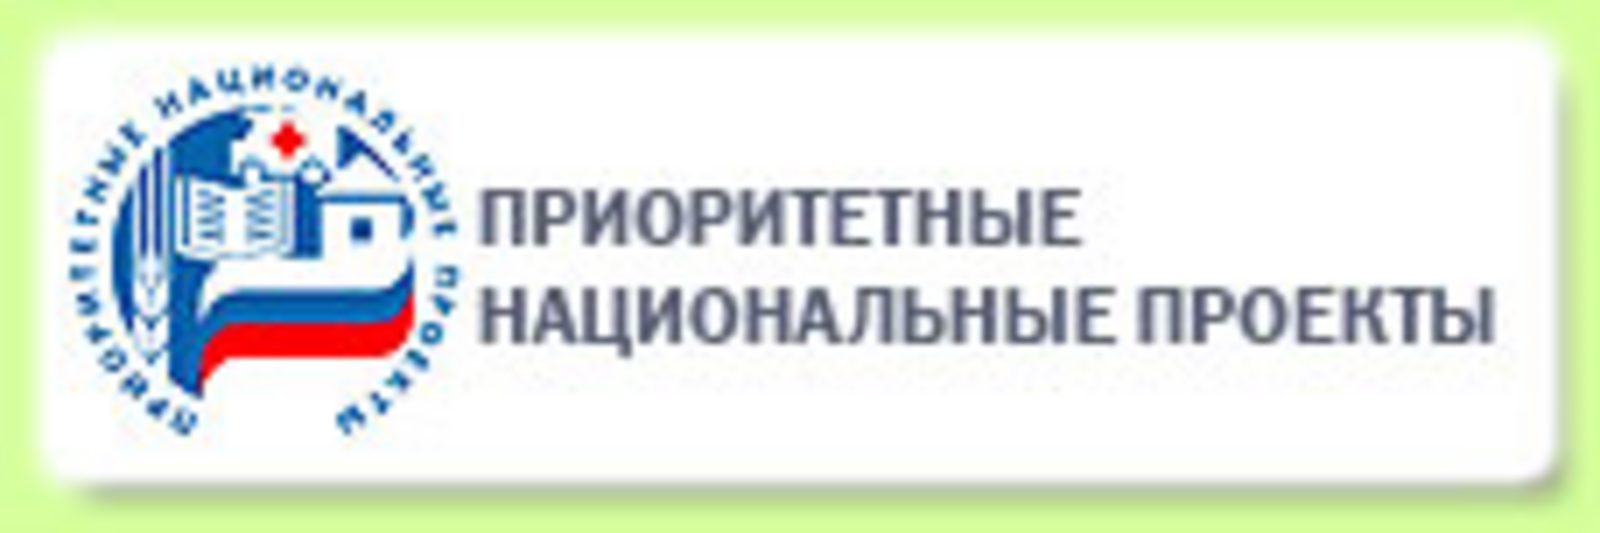 В Башкортостане обсудили реализацию Всероссийского проекта «Навигаторы детства 2.0»